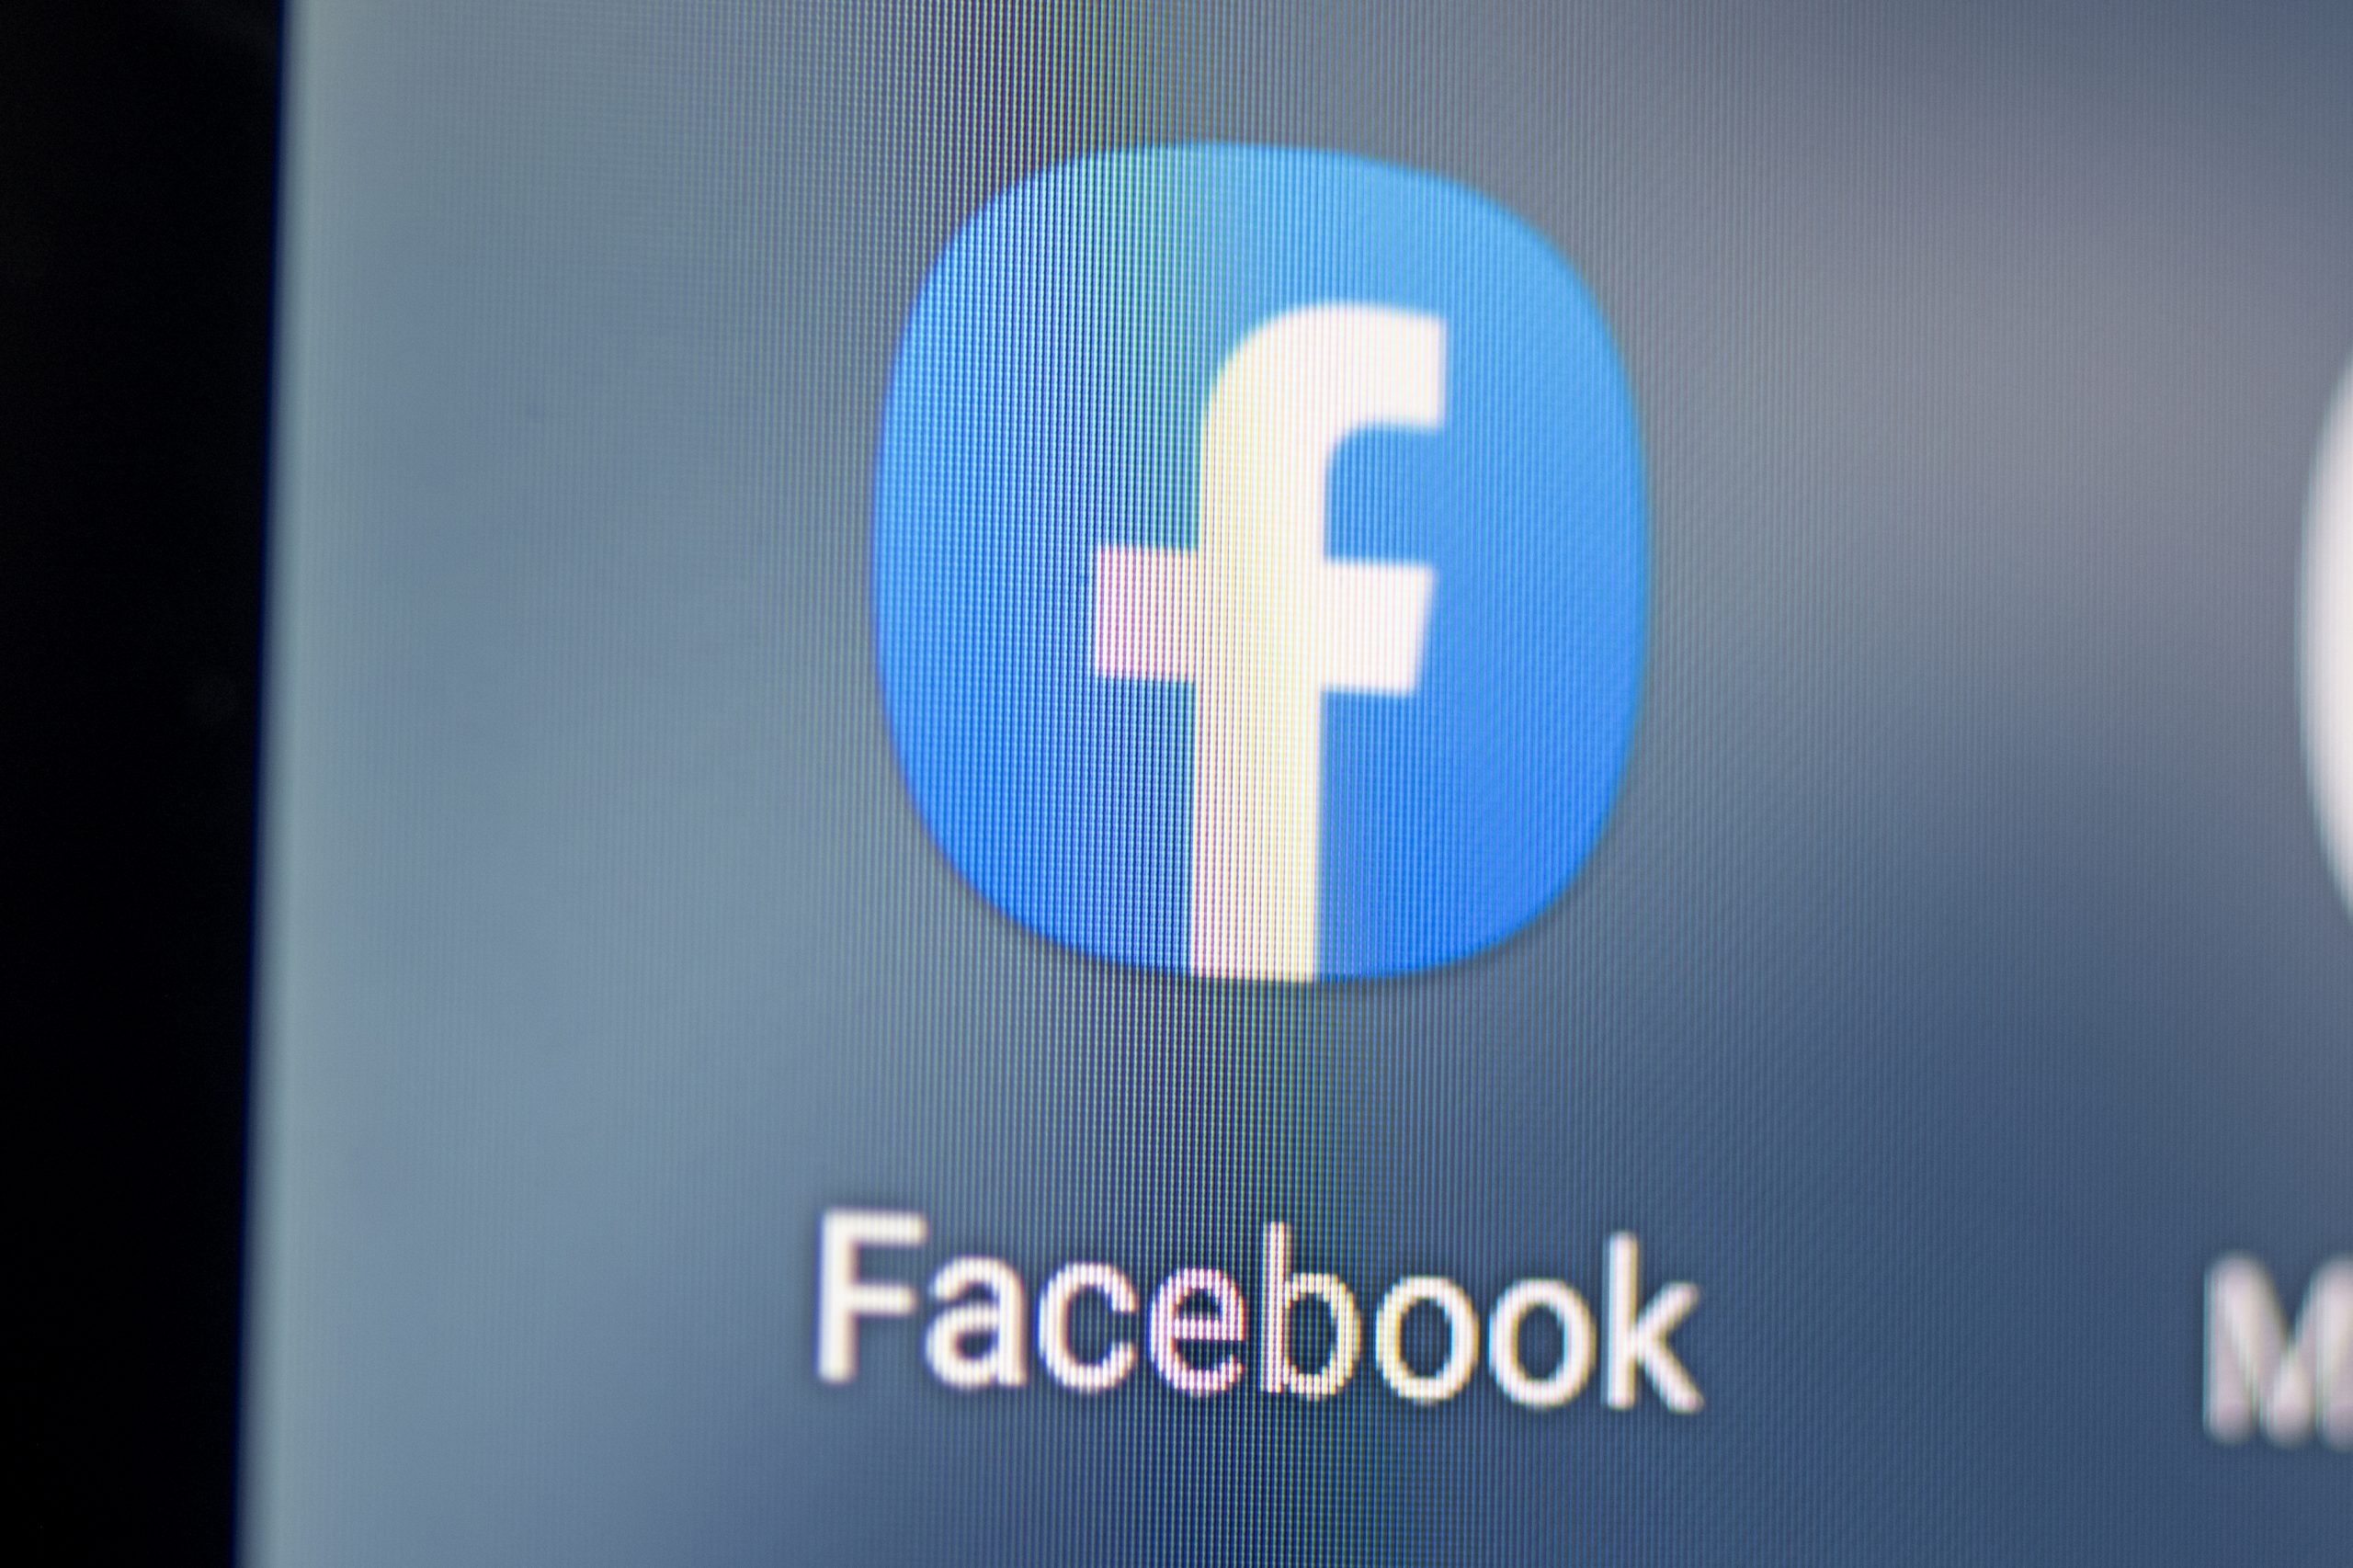 Facebook-Logo auf Handy-Bildschirm